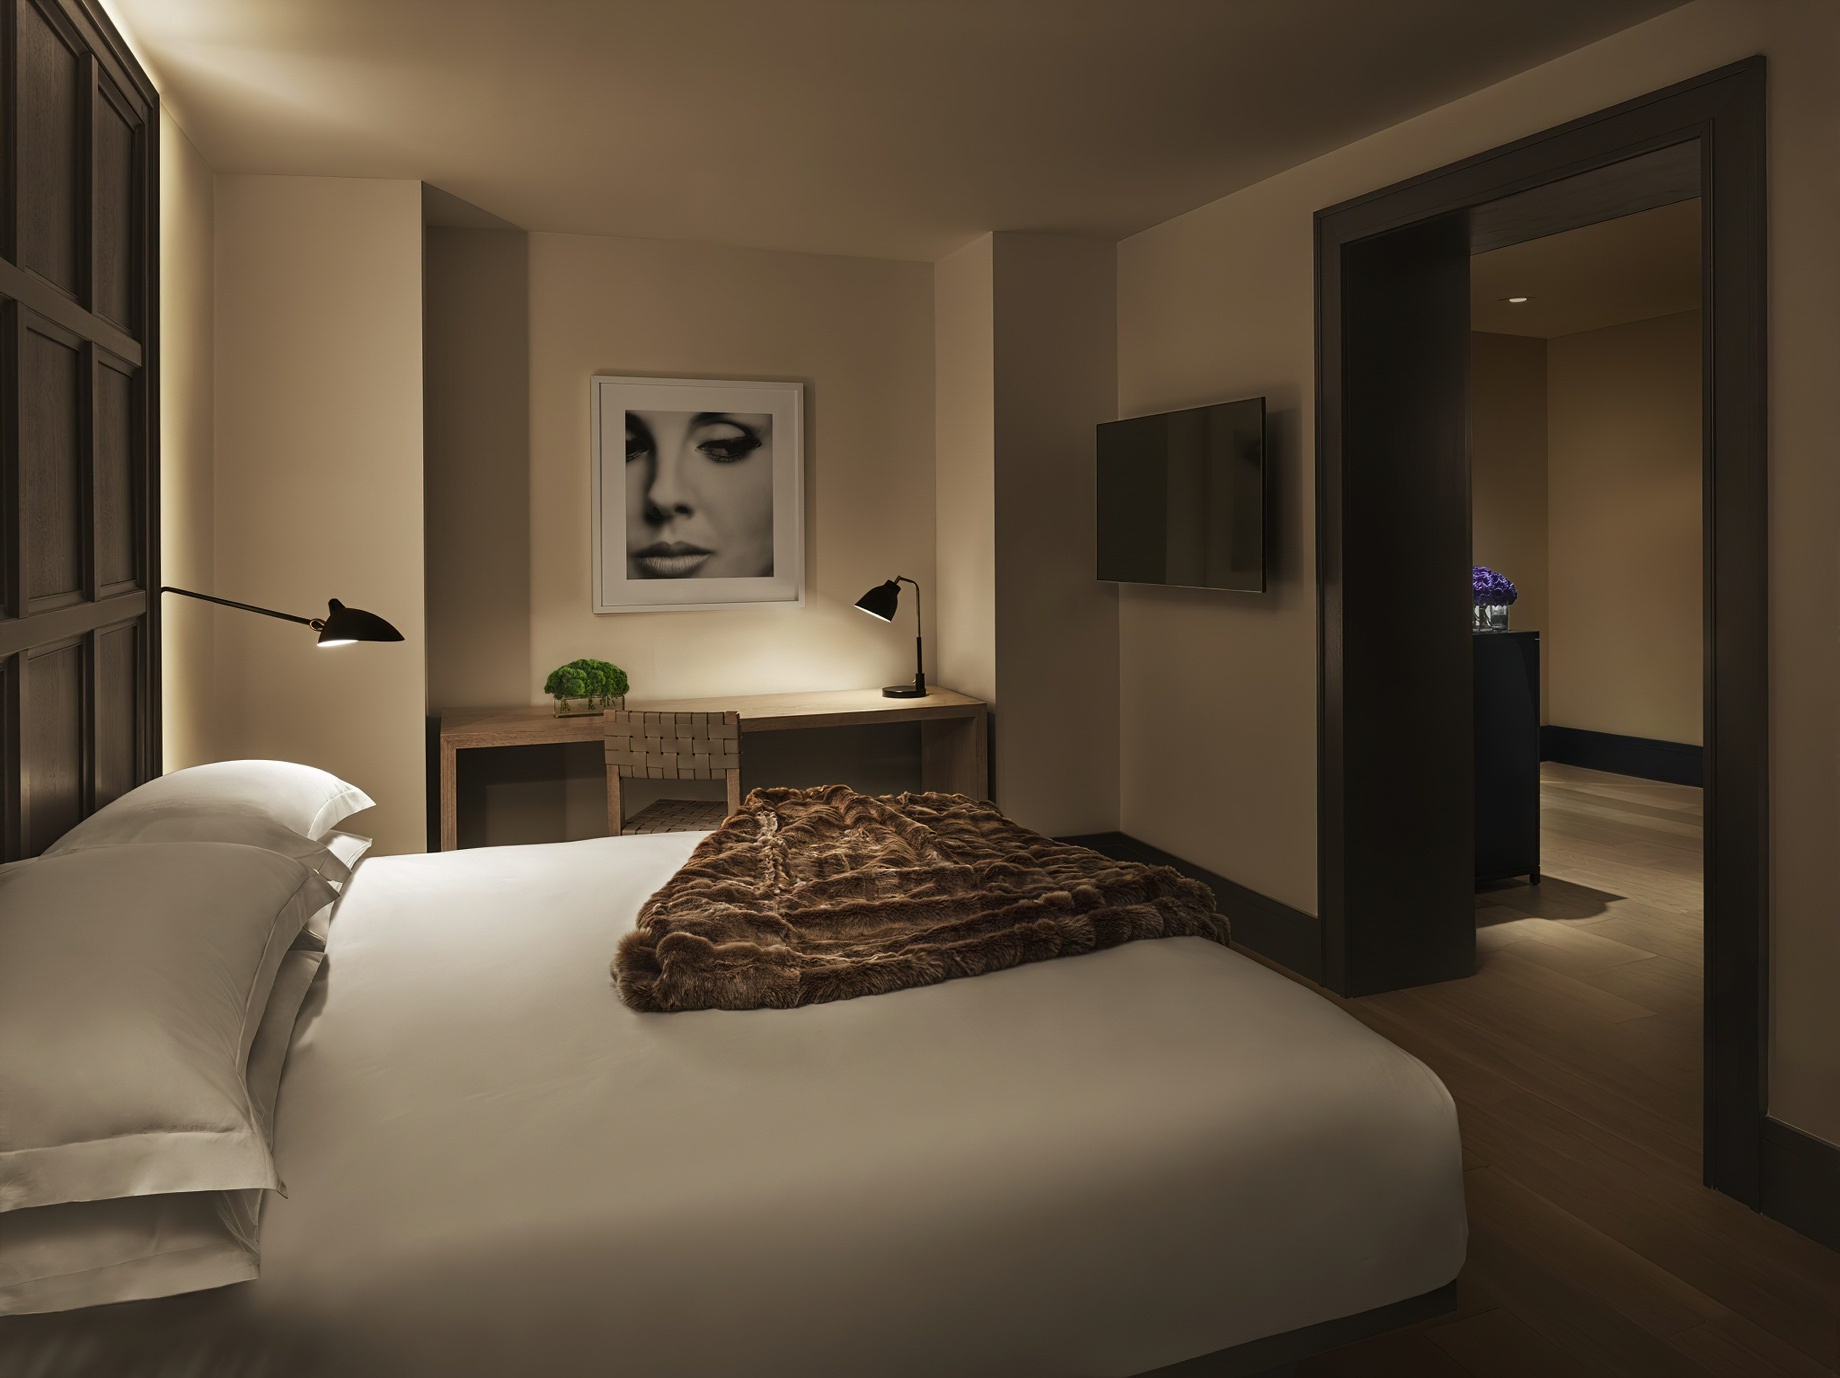 The New York EDITION Hotel – New York, NY, USA – Bedroom Decor